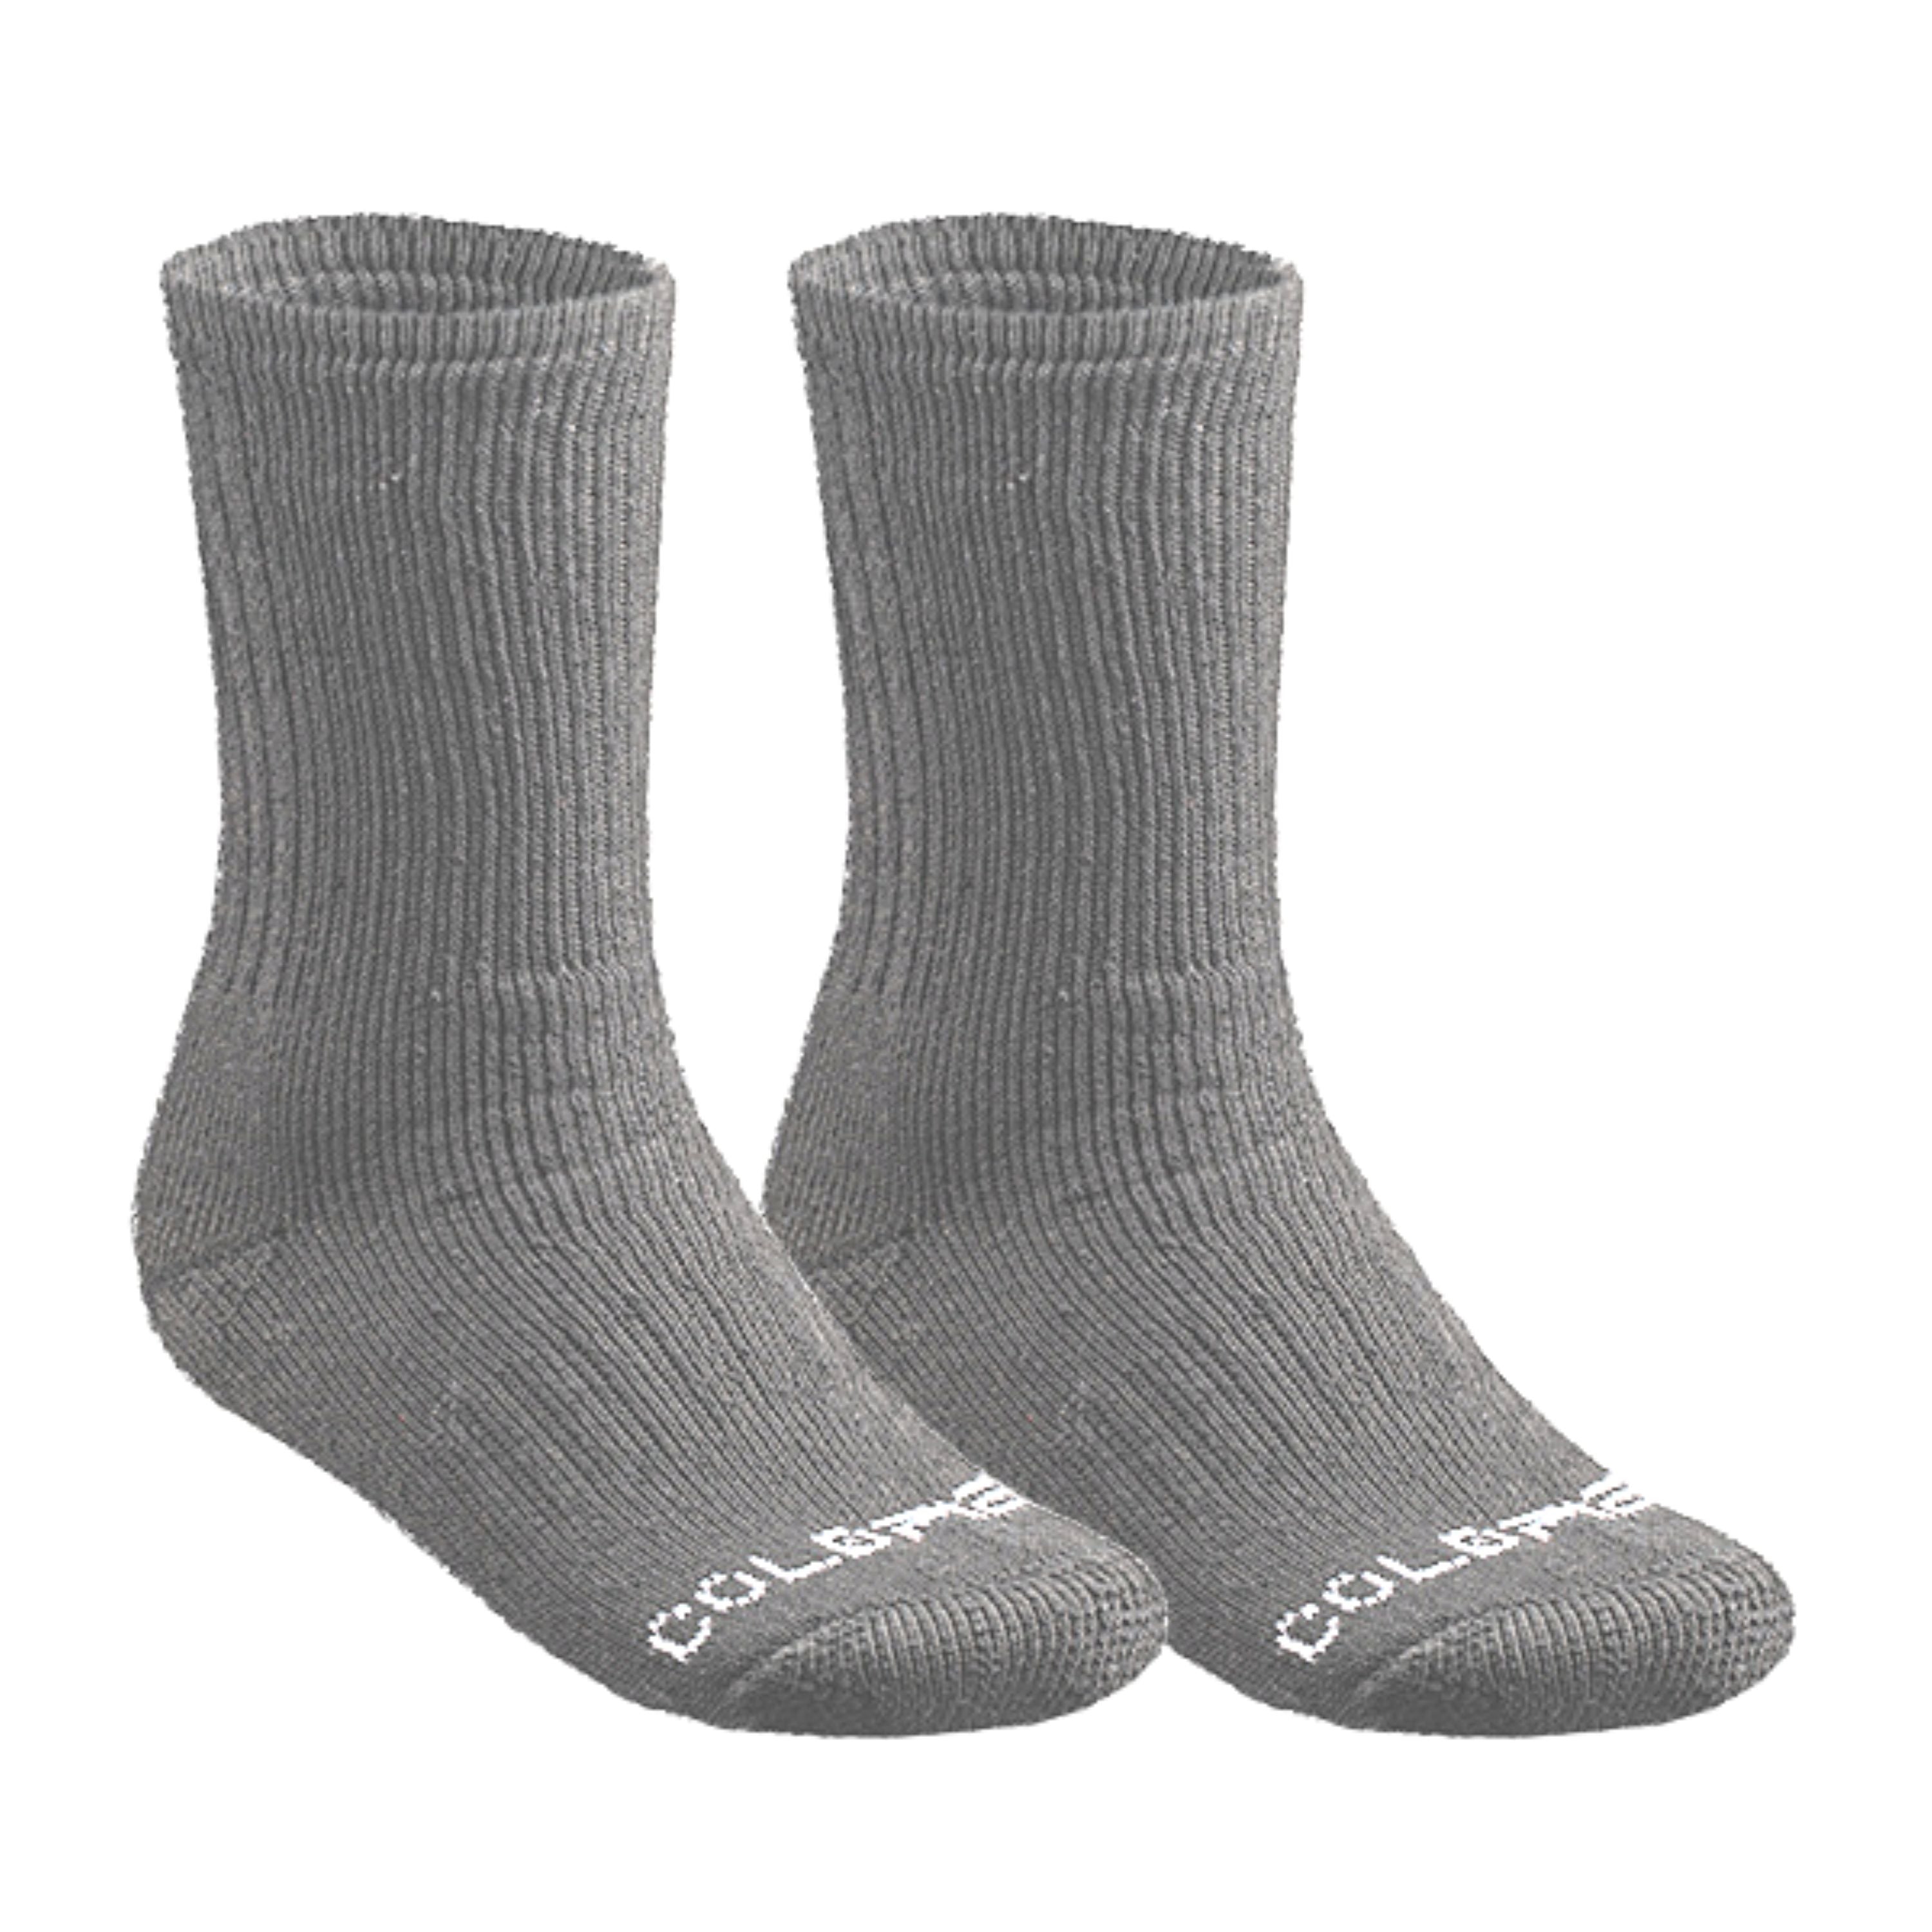 Merino wool socks - Men’s